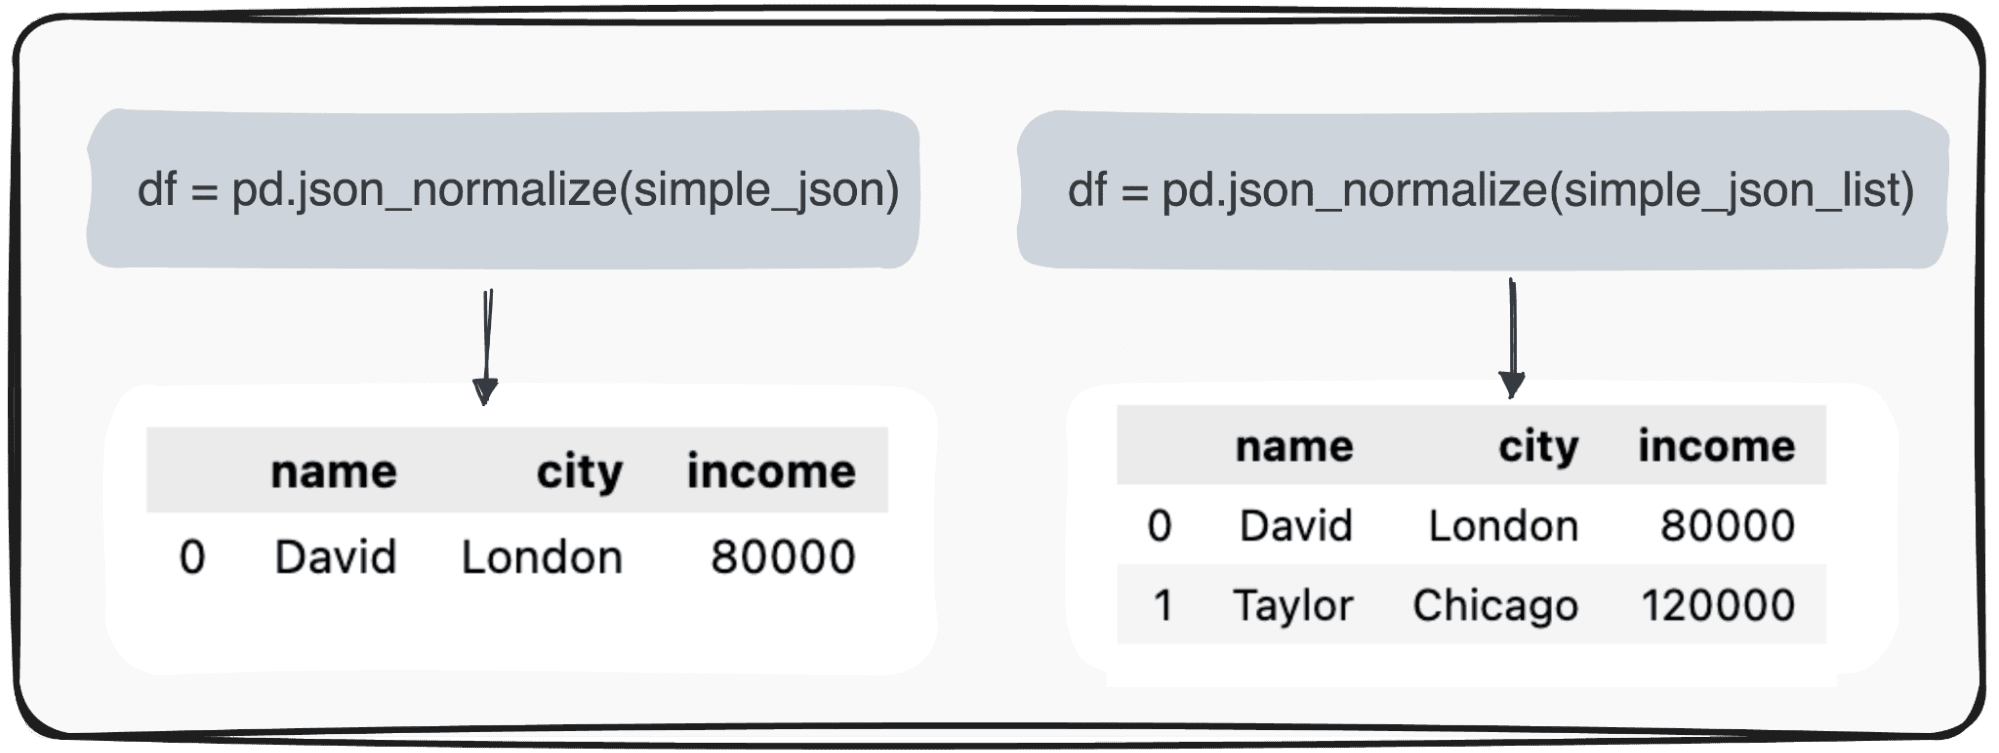 تحويل JSONs إلى إطارات بيانات Pandas: تحليلها بالطريقة الصحيحة